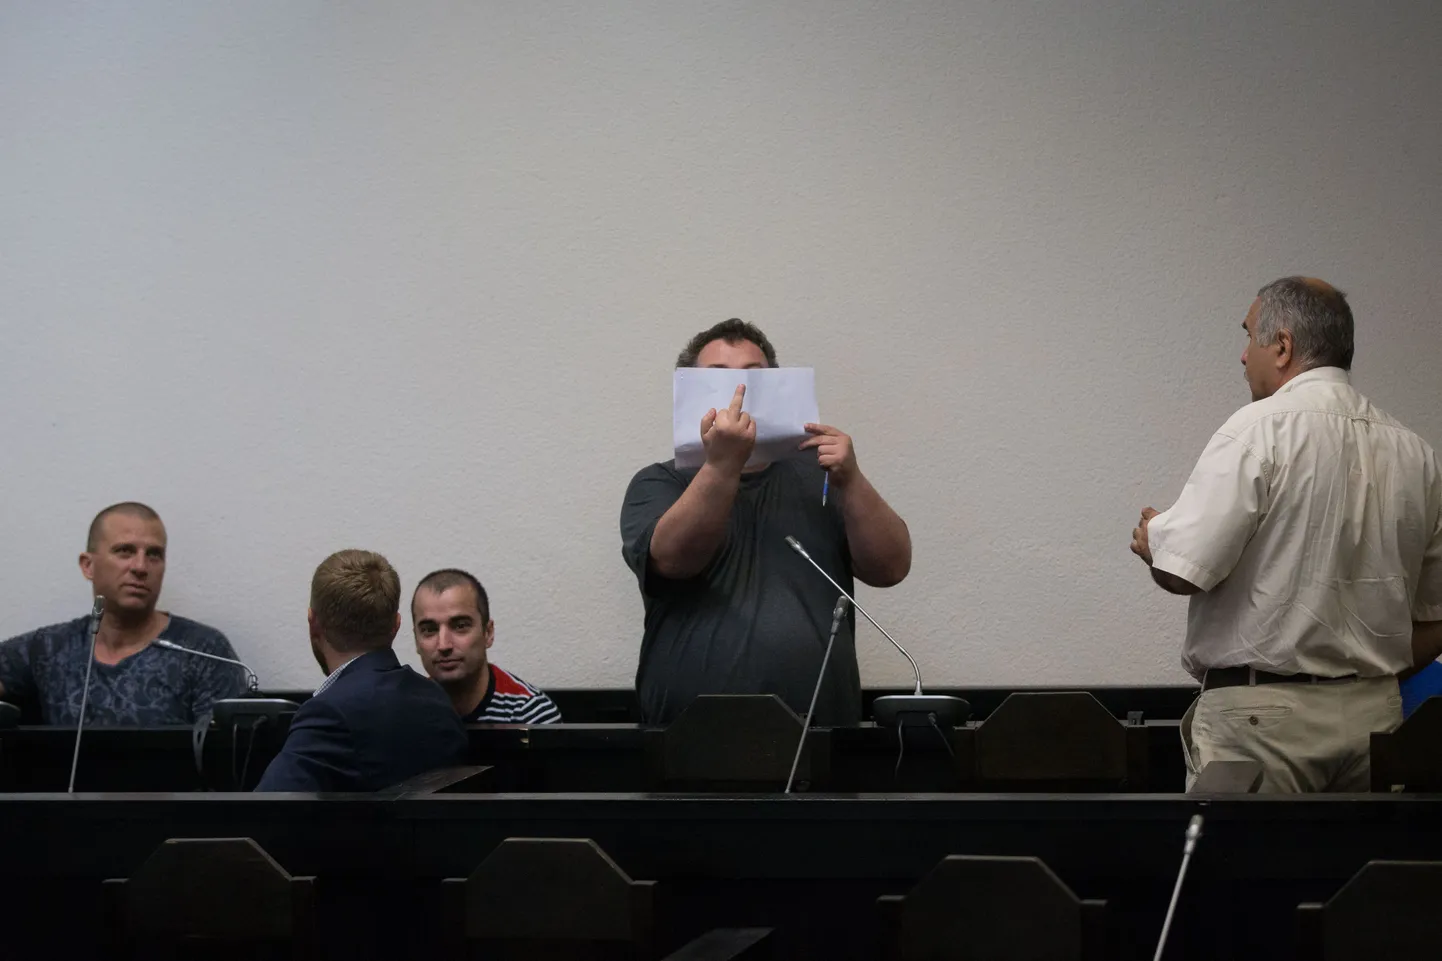 Голландские наркокурьеры Стефан Хиуот (слева) и Педрам Голам Варнам Касти в суде вели себя спокойно, купивший у них наркотики Андрей Елин до вынесения приговора держался разнузданно и угрожал фотографу.